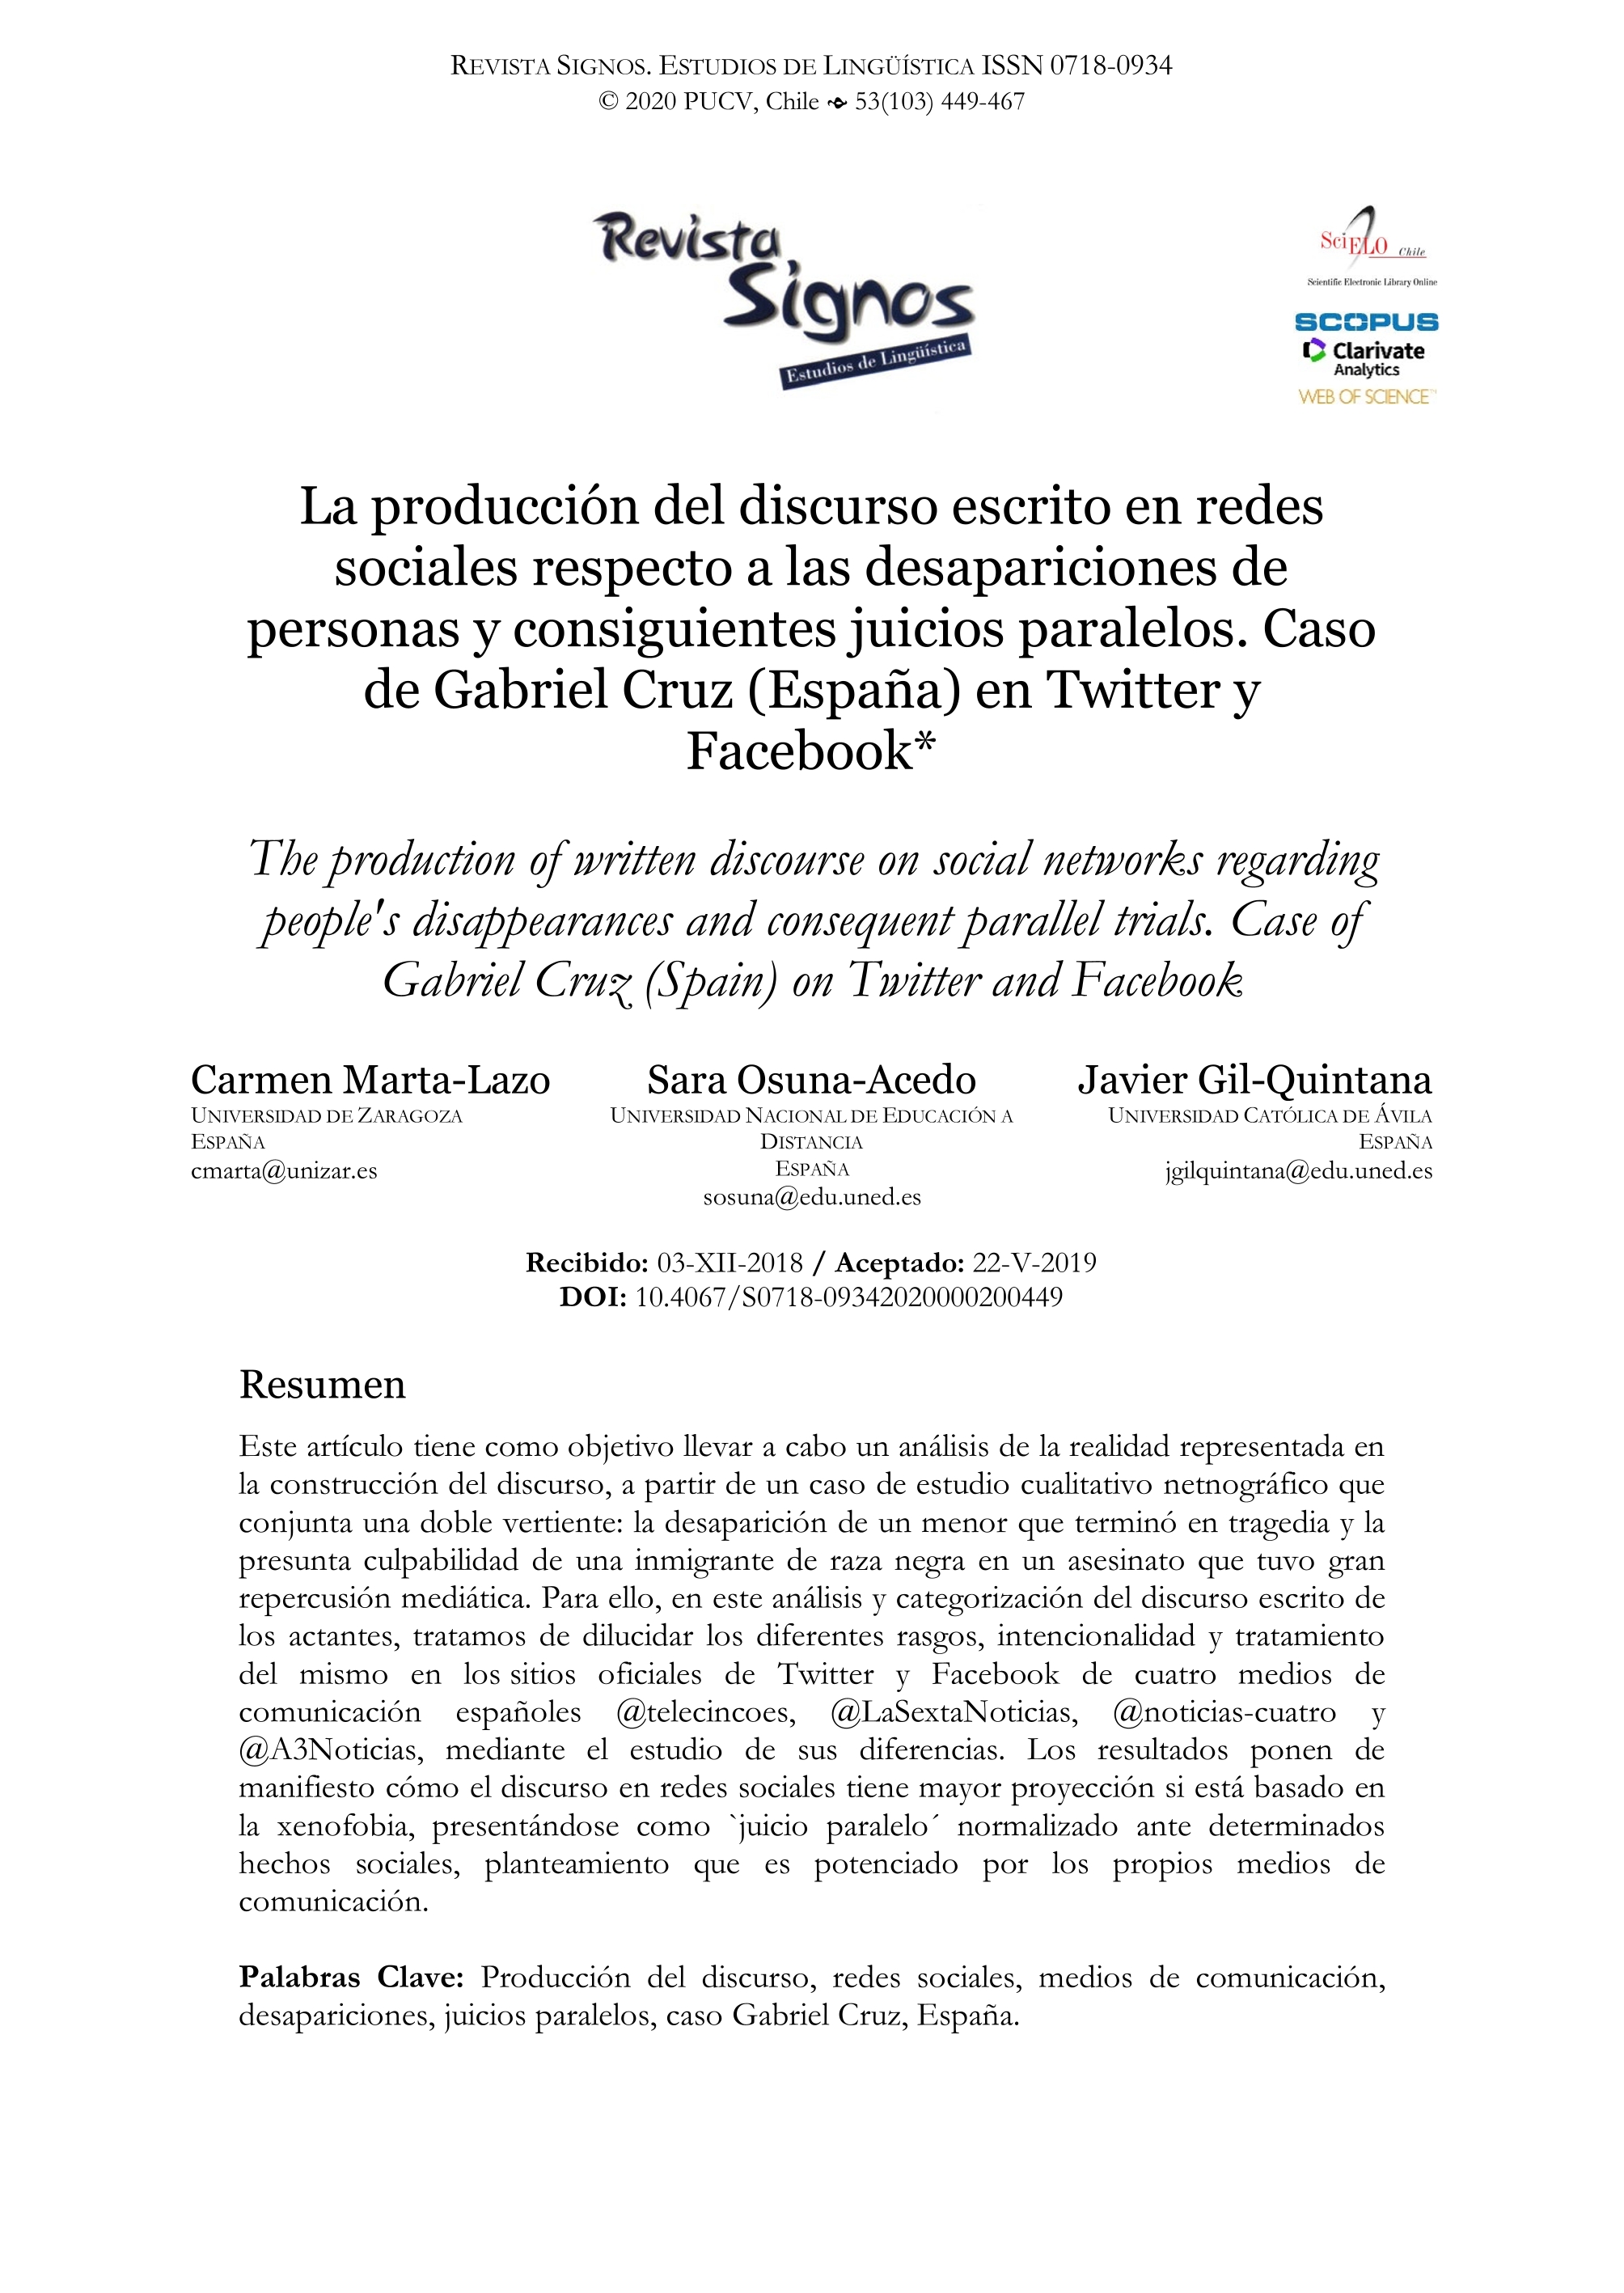 La producción del discurso escrito en redes sociales respecto a las desapariciones de personas y consiguientes juicios paralelos. Caso de Gabriel Cruz (España) en Twitter y Facebook